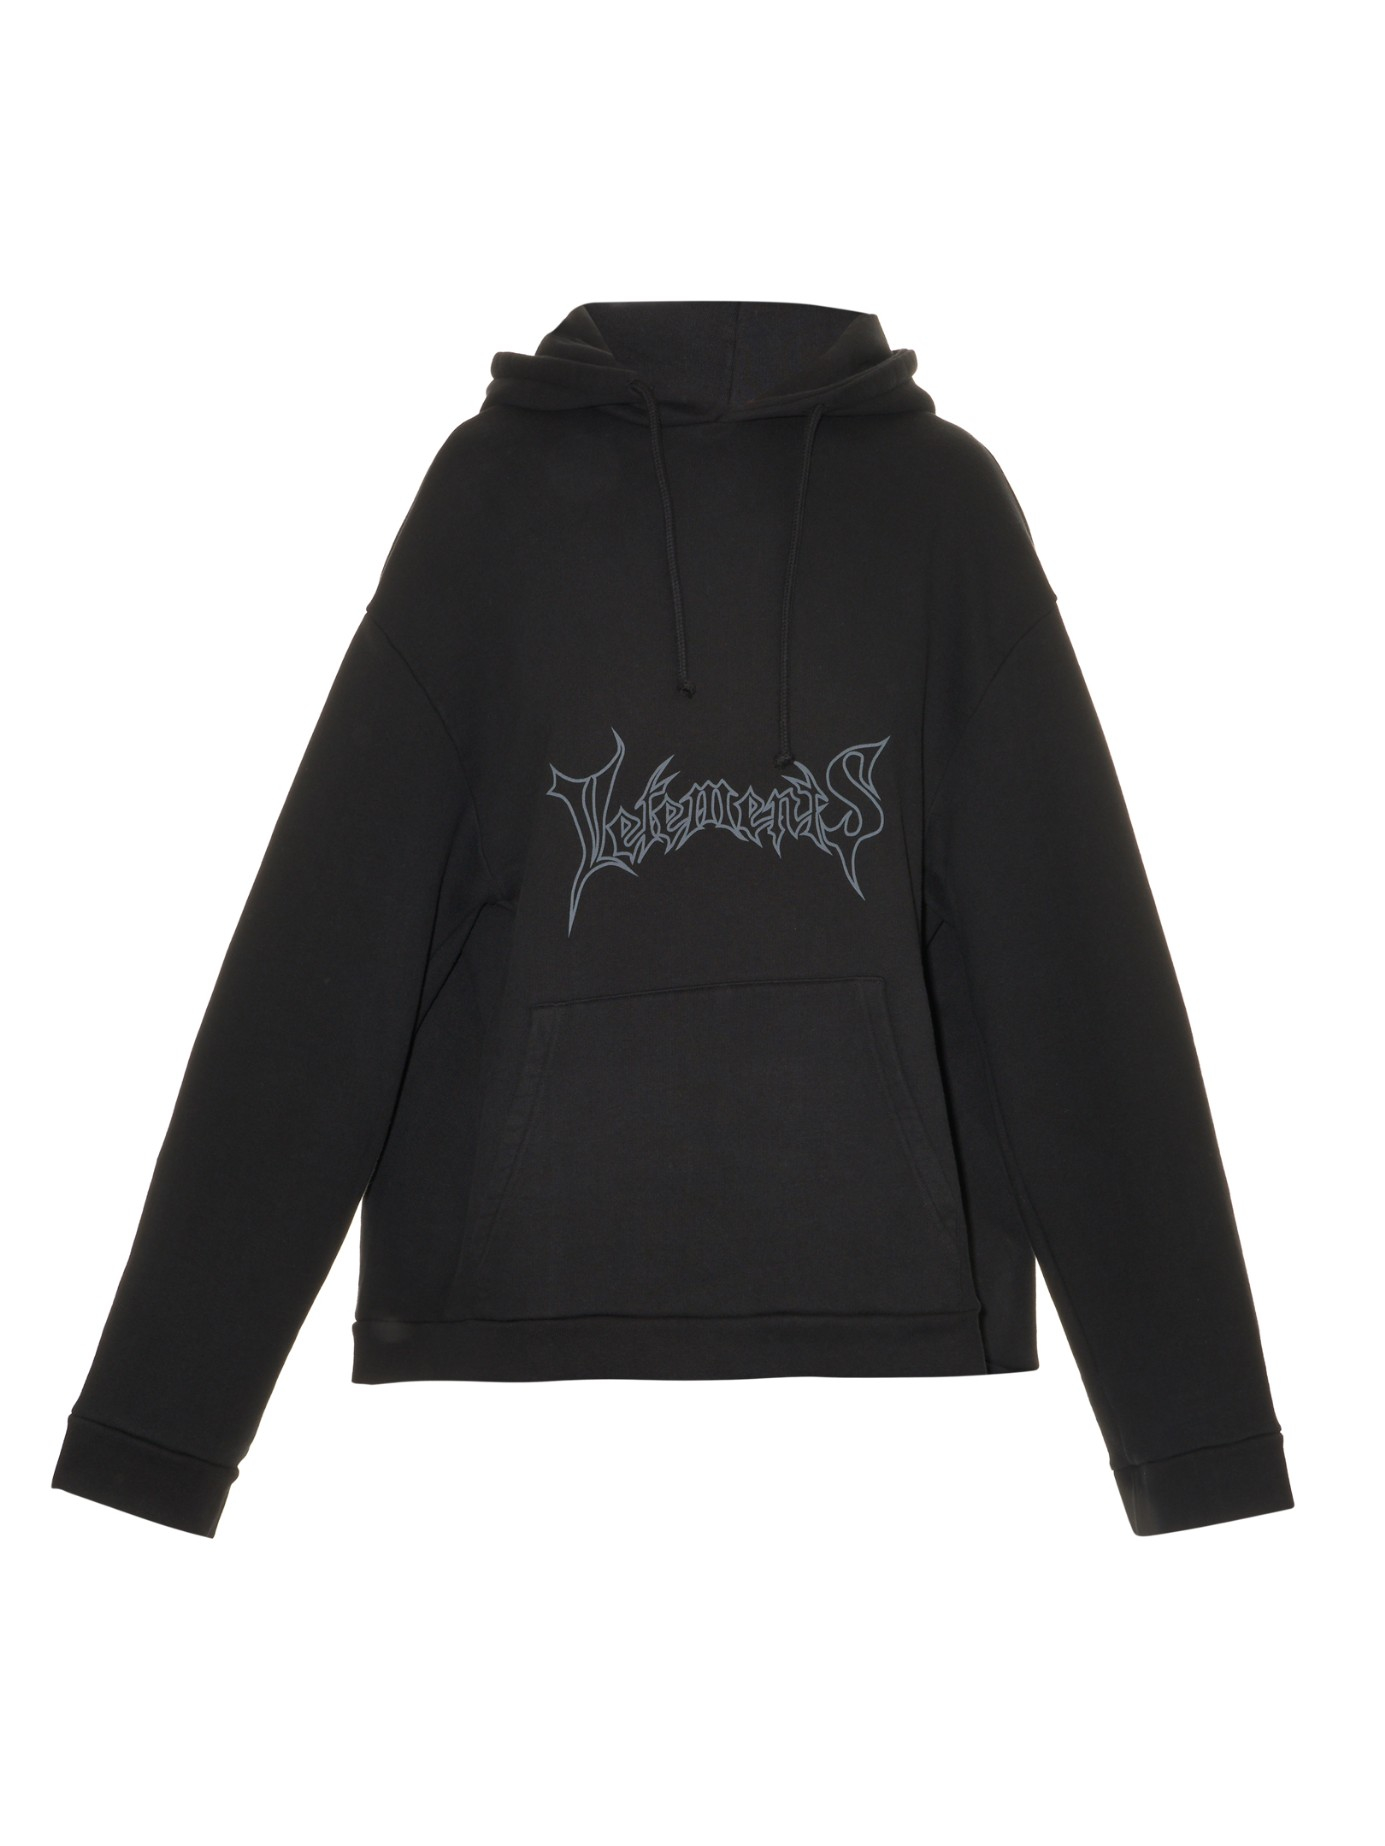 Vetements Logo-Print Hooded Sweatshirt in Black | Lyst